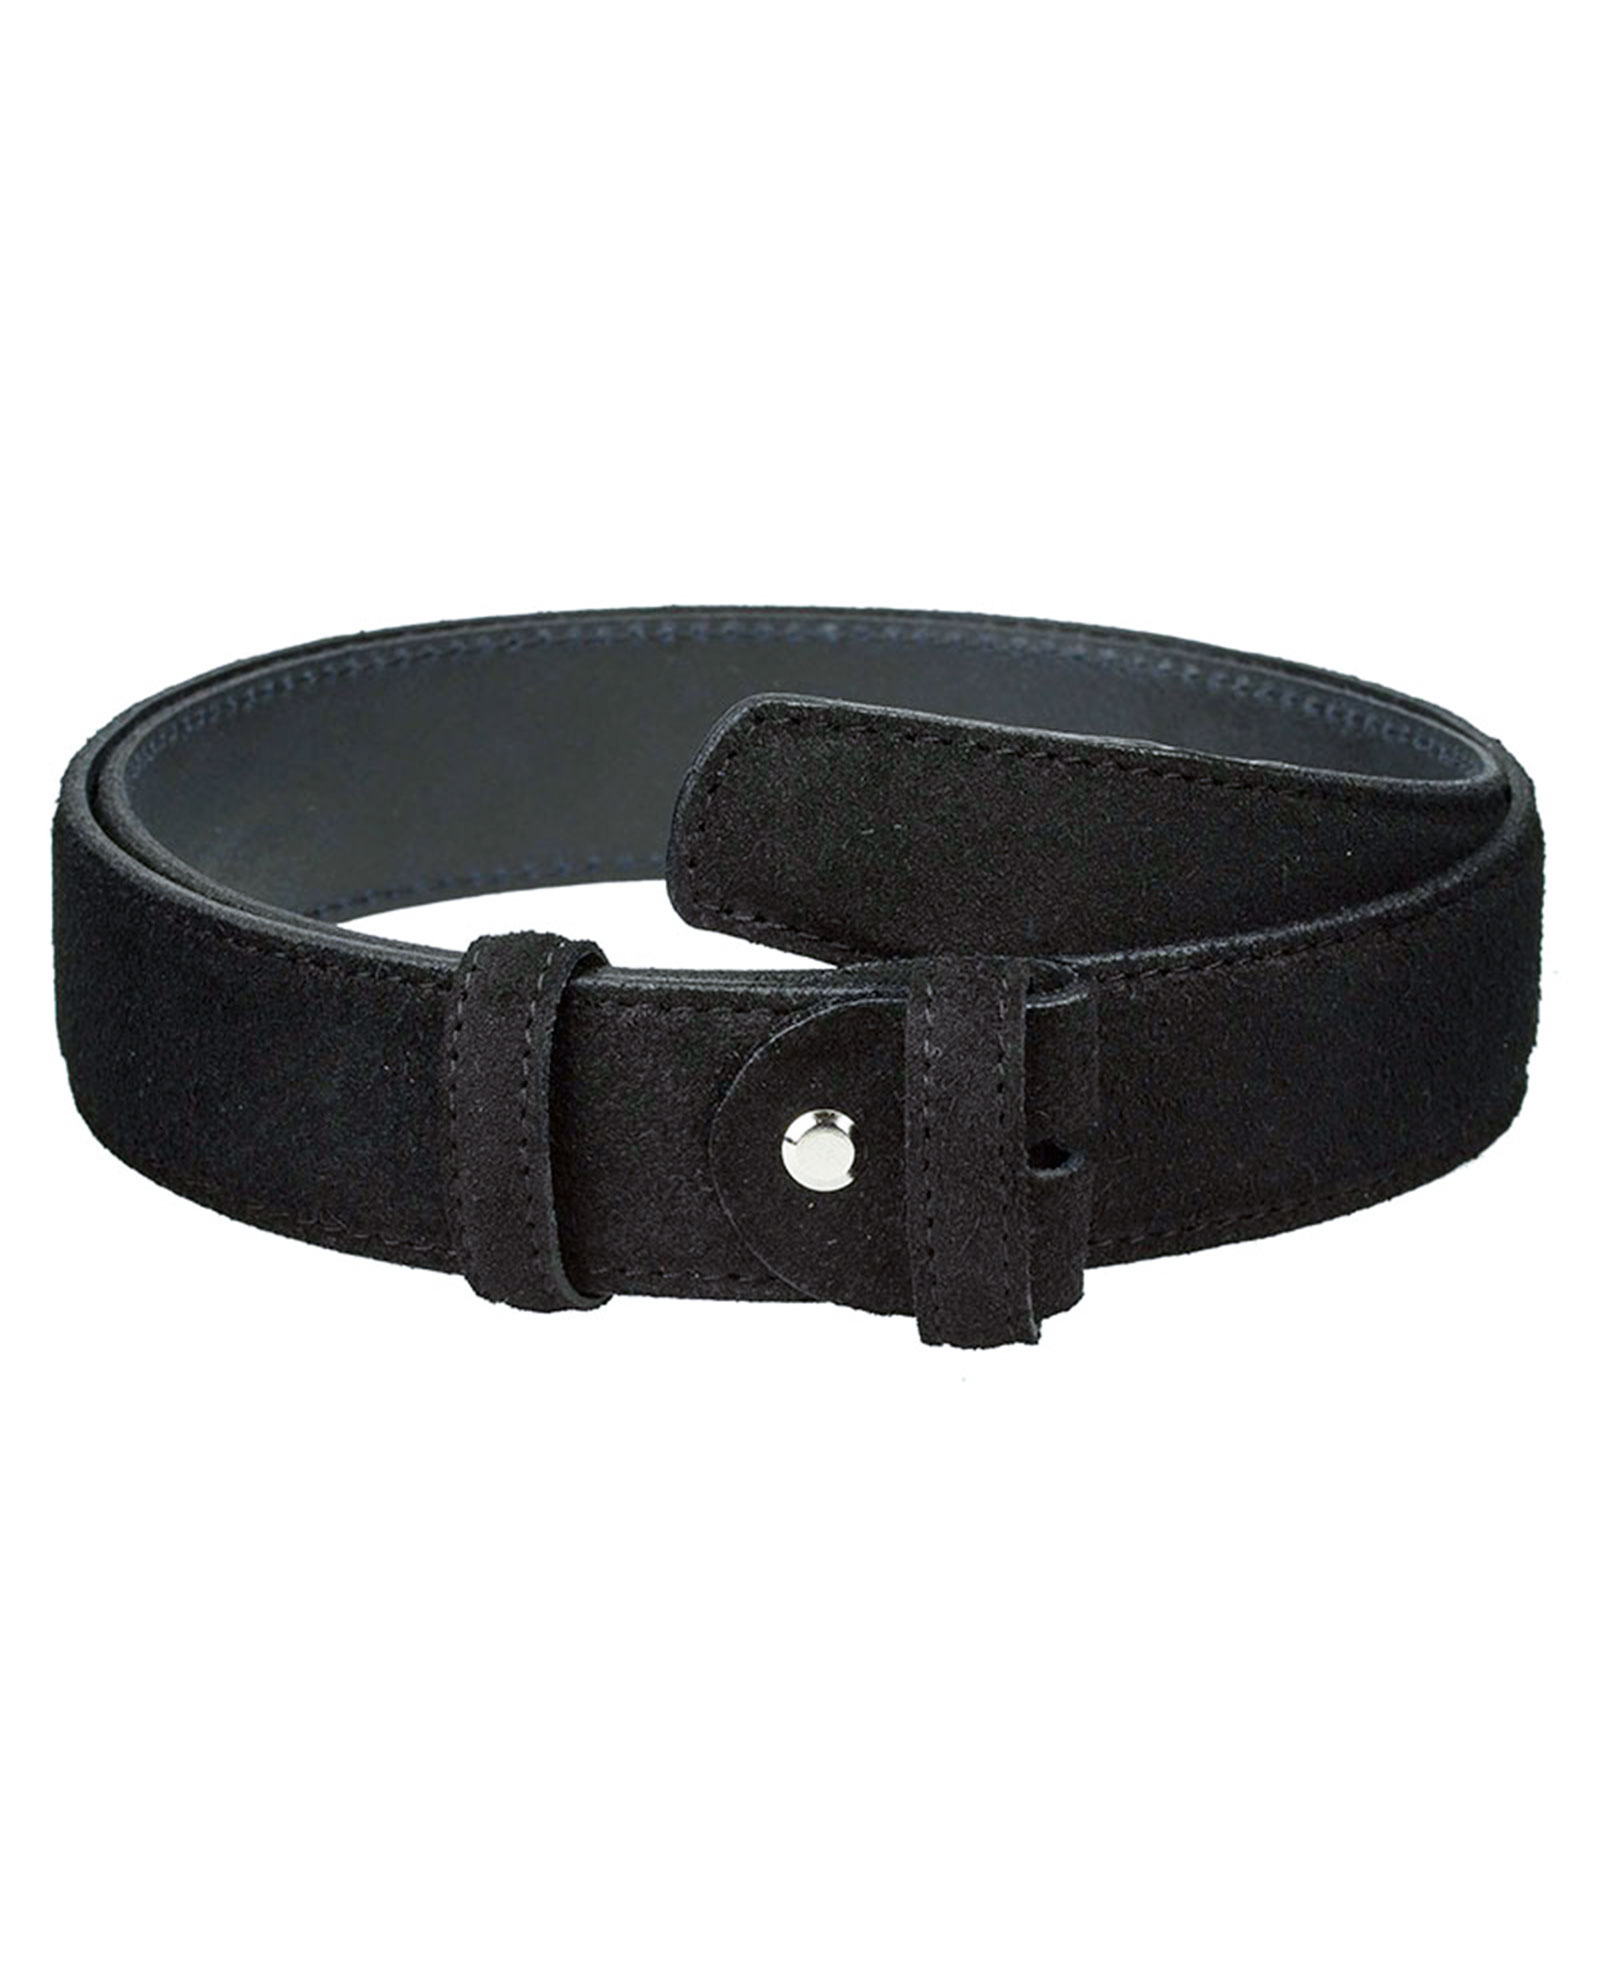 Buy Black Suede Belt - Adjustable Leather Strap - LeatherBeltsOnline.com